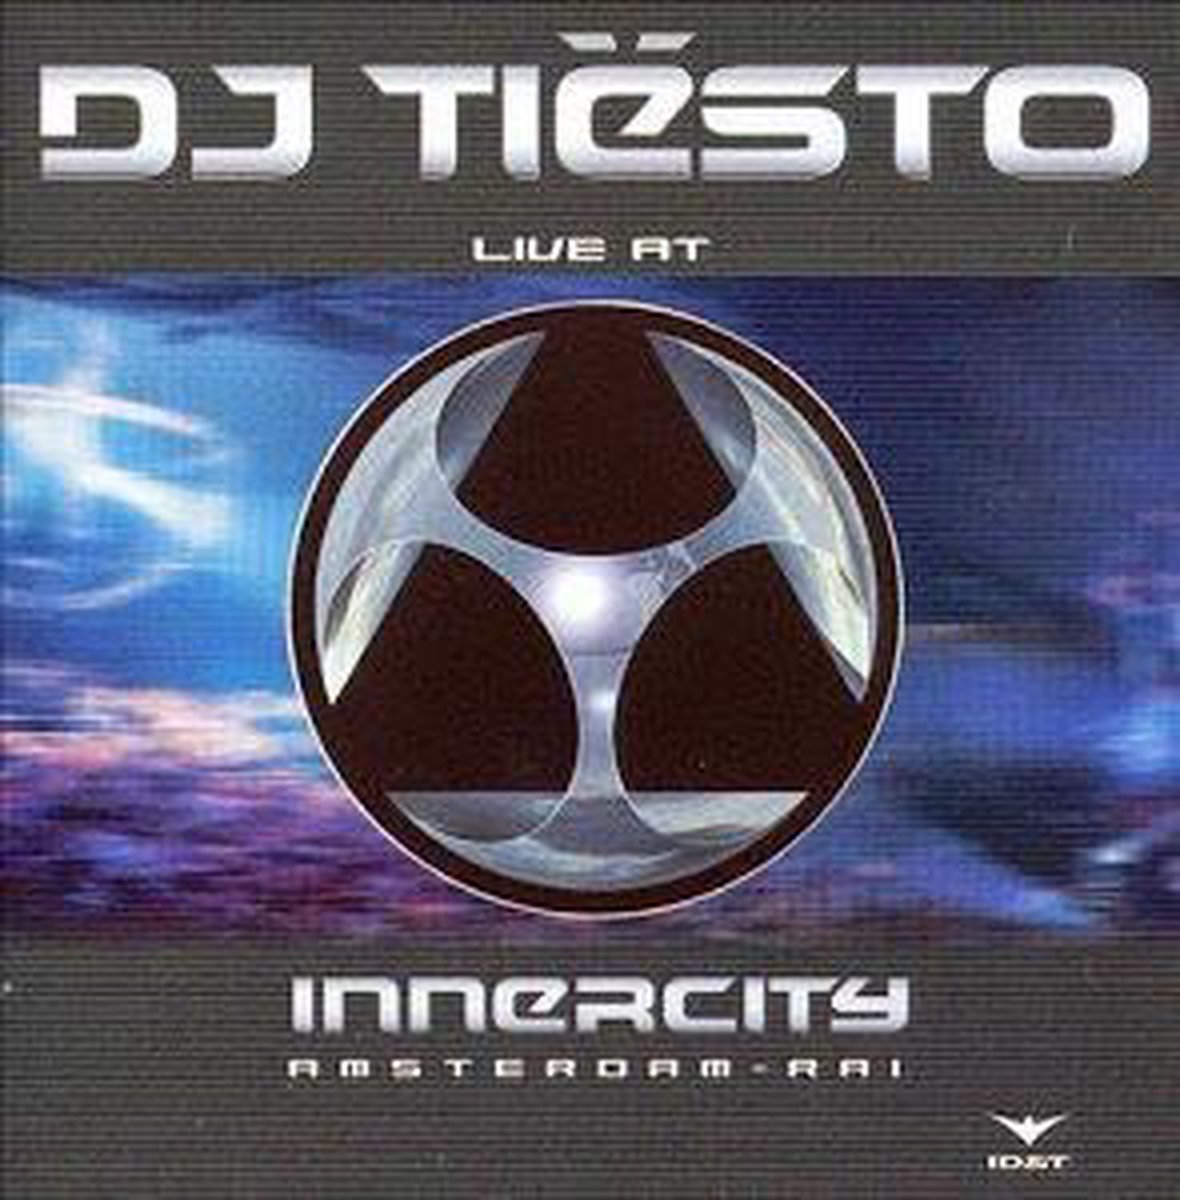 DJ Tiesto Live at Innercity Amsterdam RAI - Various